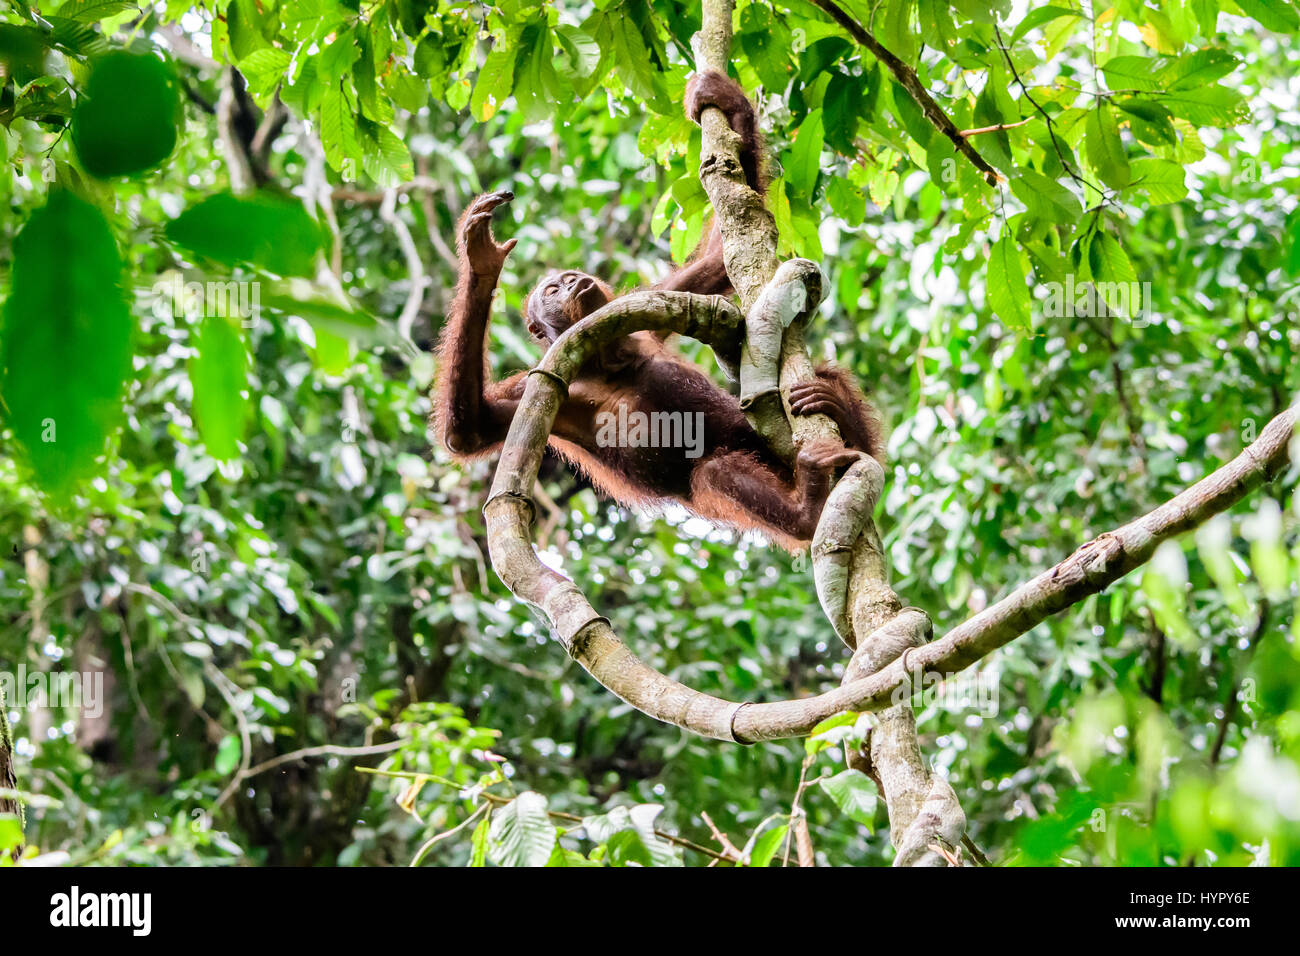 Orangután feliz trepando a los árboles en el bosque Foto de stock